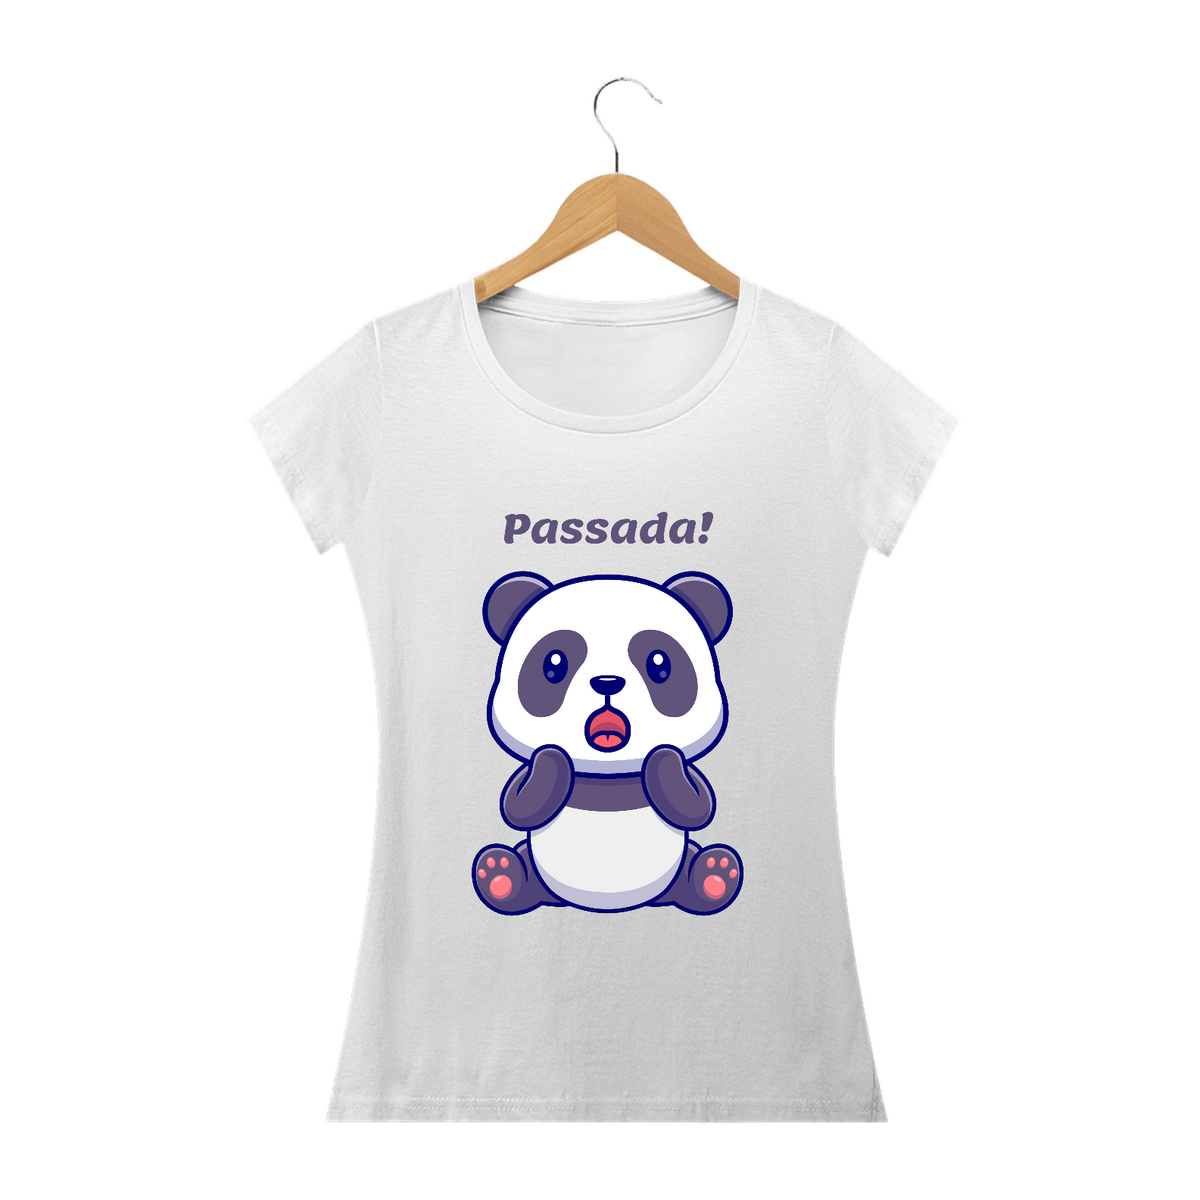 Nome do produto: Passada - Urso Panda - Modelo Prime